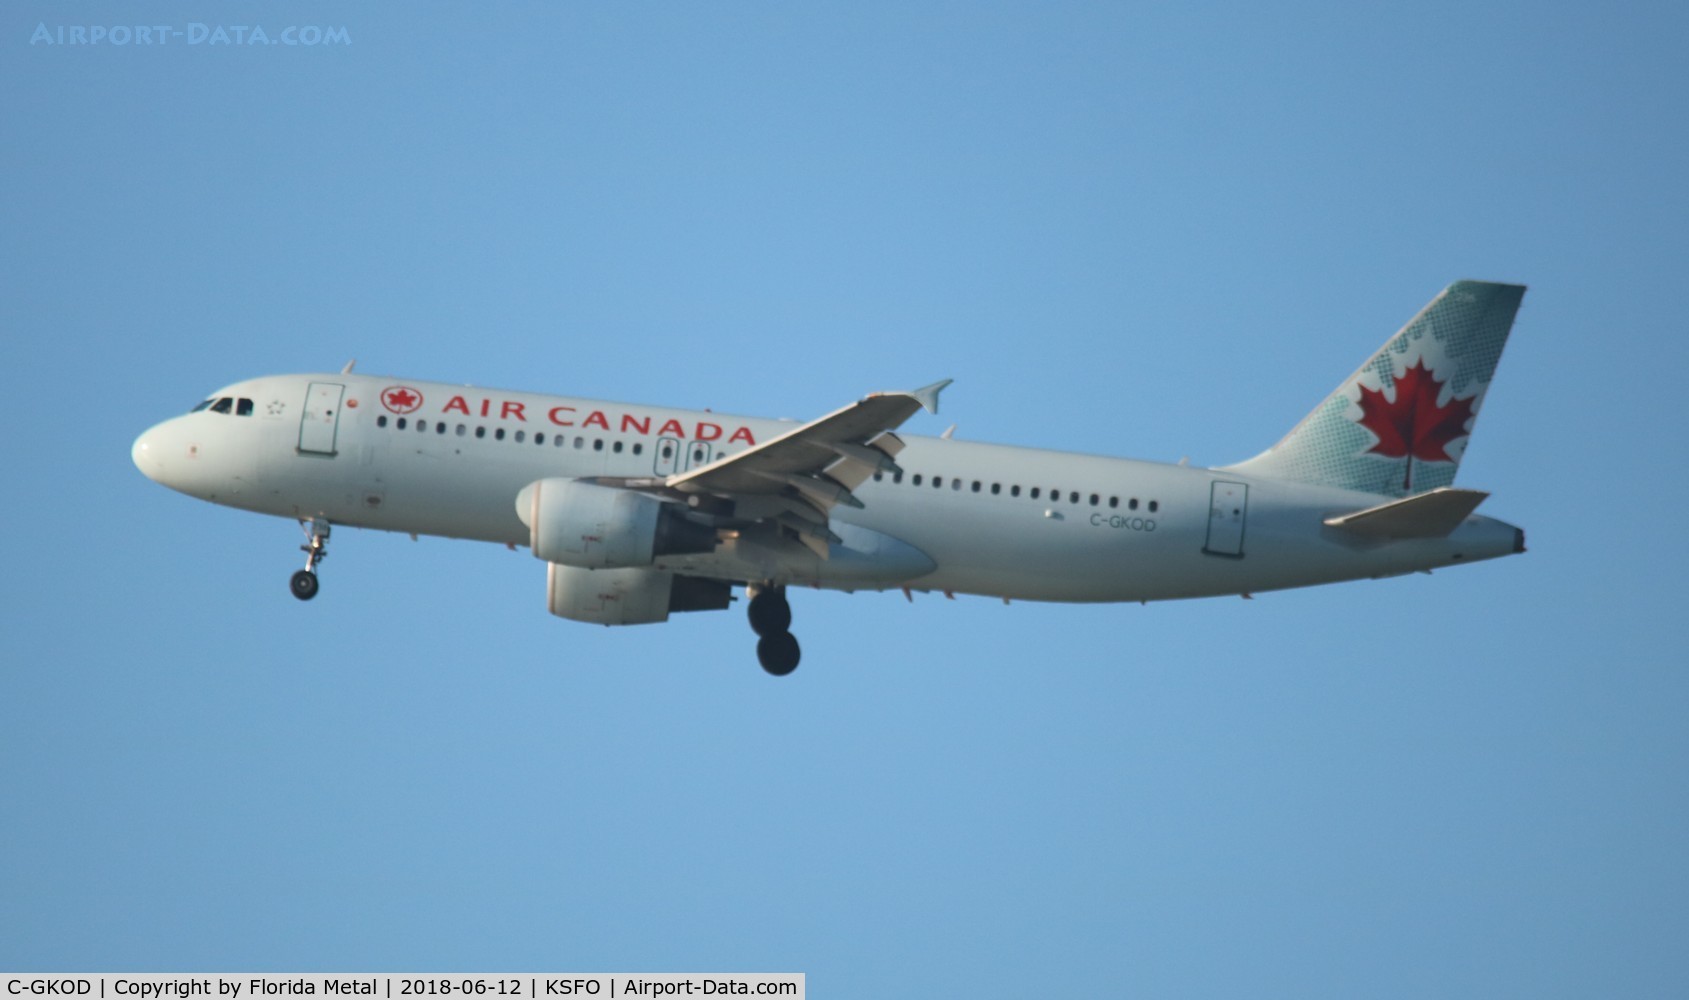 C-GKOD, 2002 Airbus A320-214 C/N 1864, Air Canada A320 zx